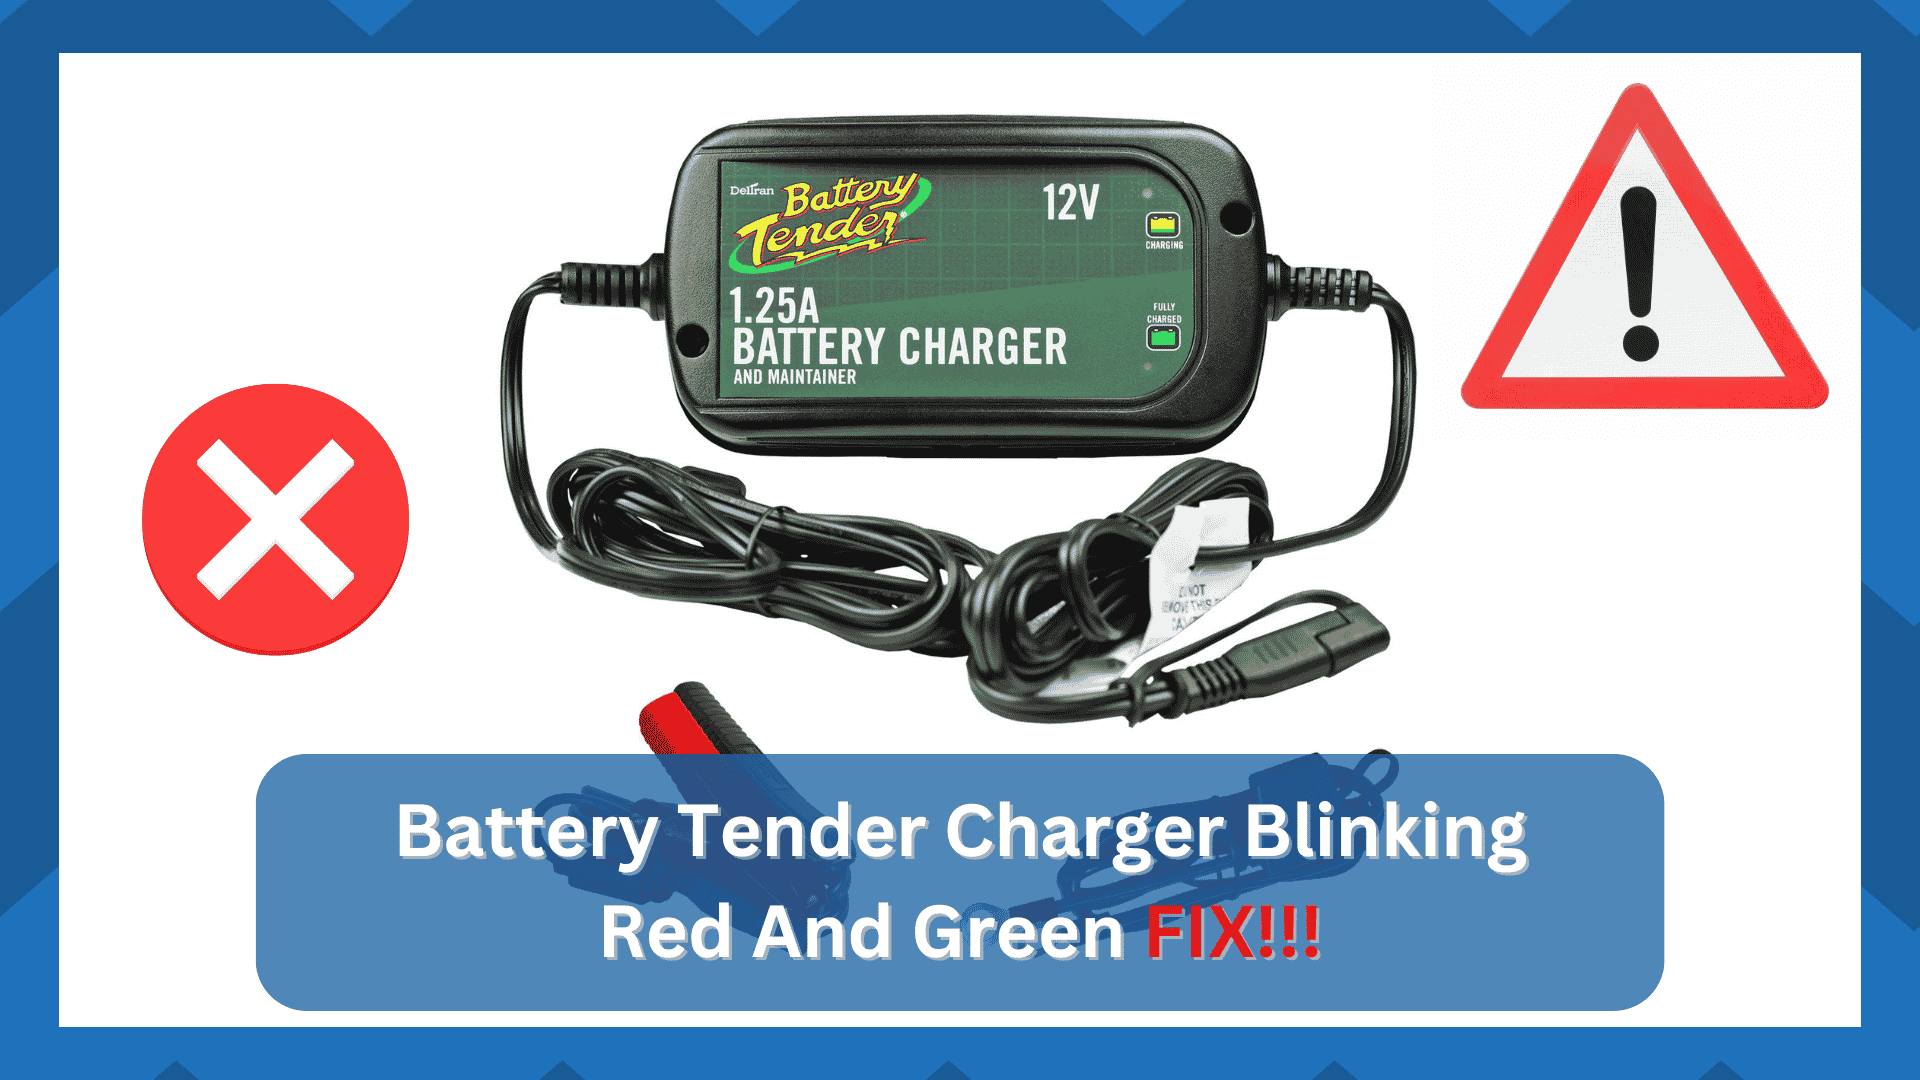 traveller battery charger blinking green